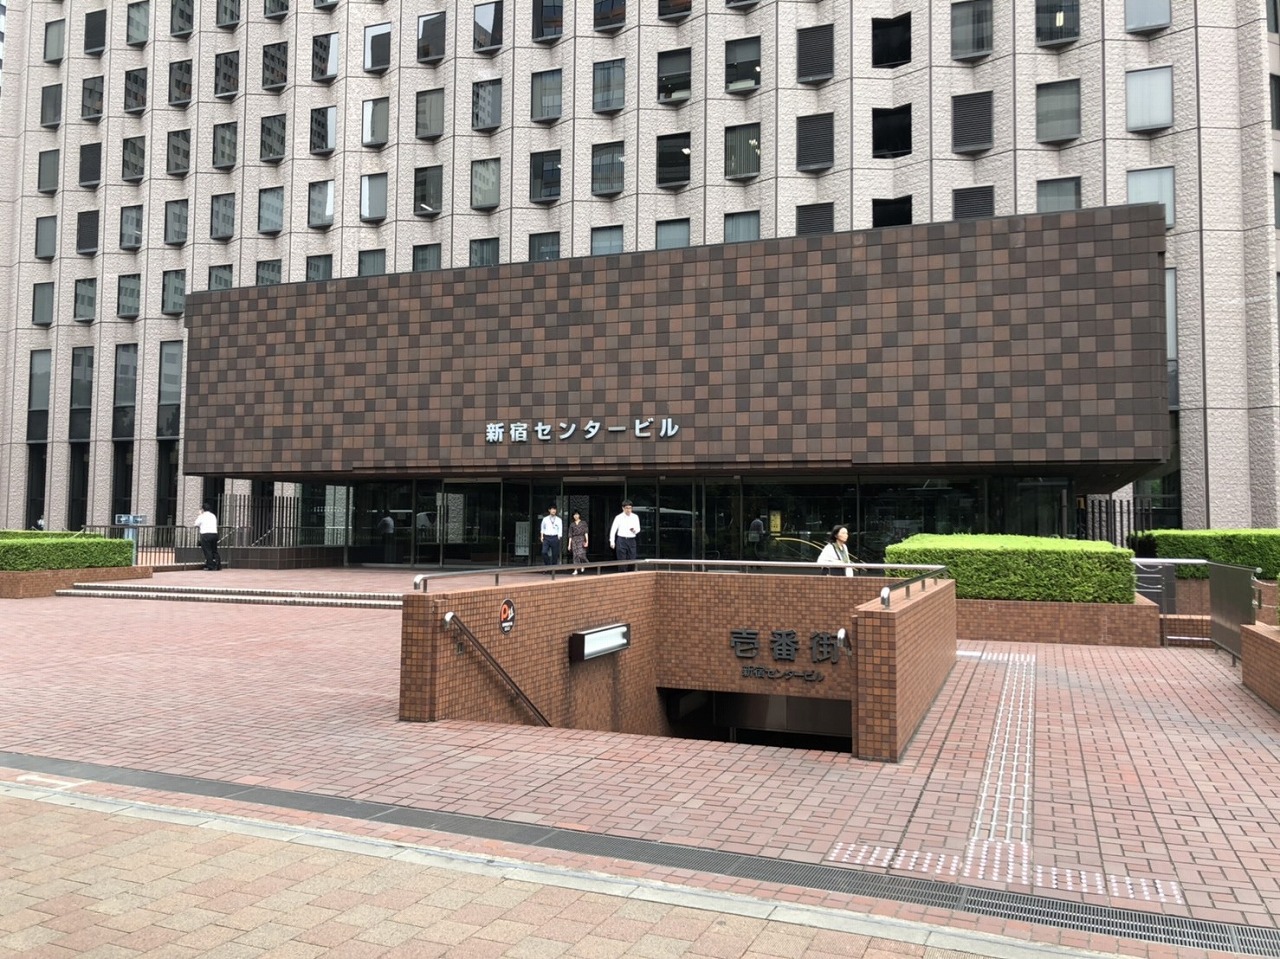 外観_新宿センタービルの入り口部分です。